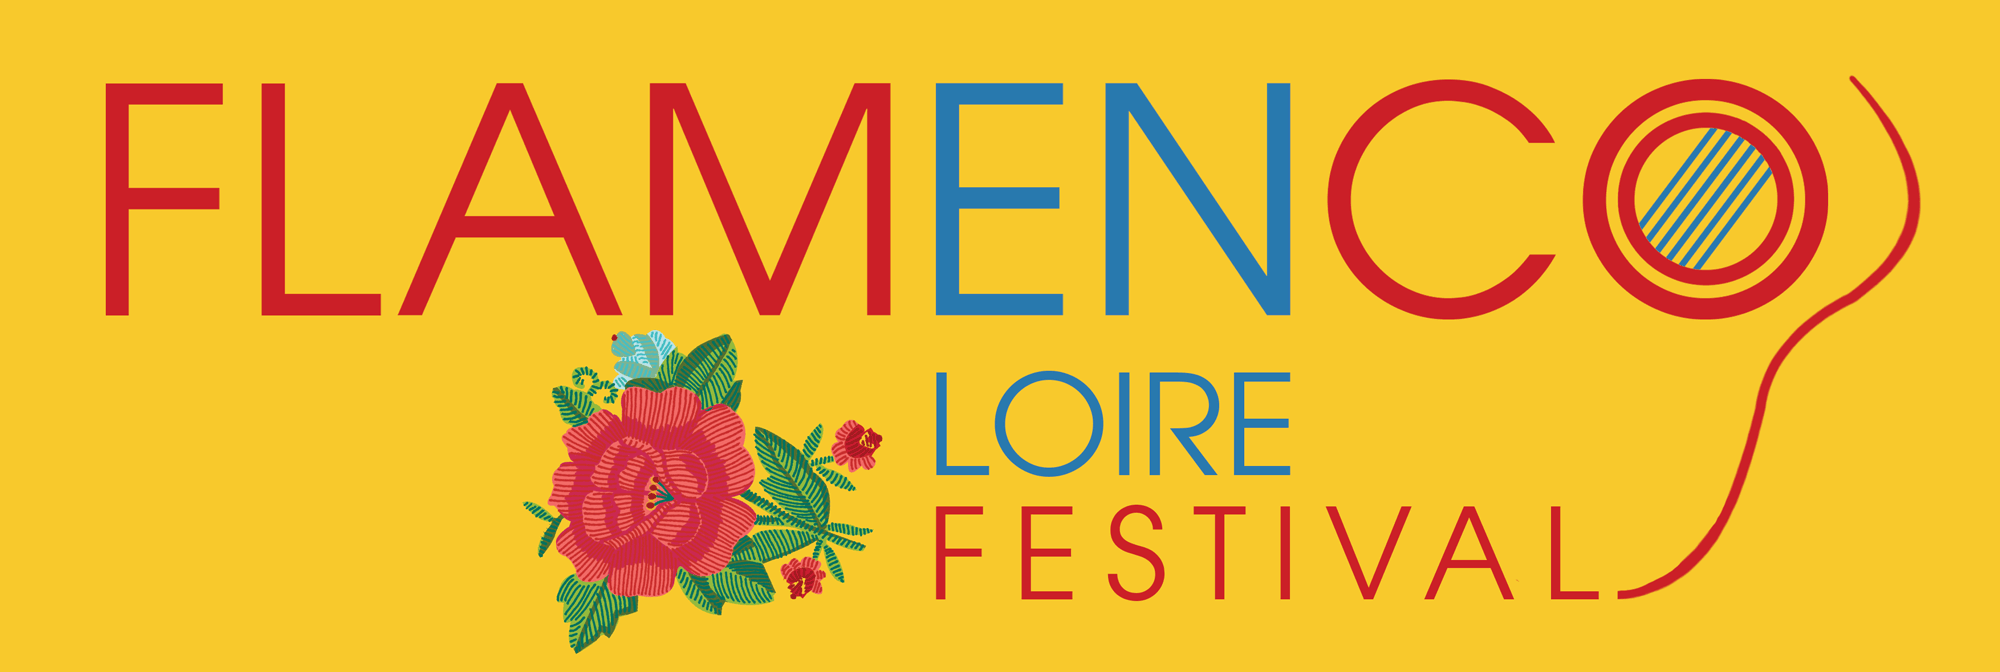 Festival Flamenco en Loire - 2017 -